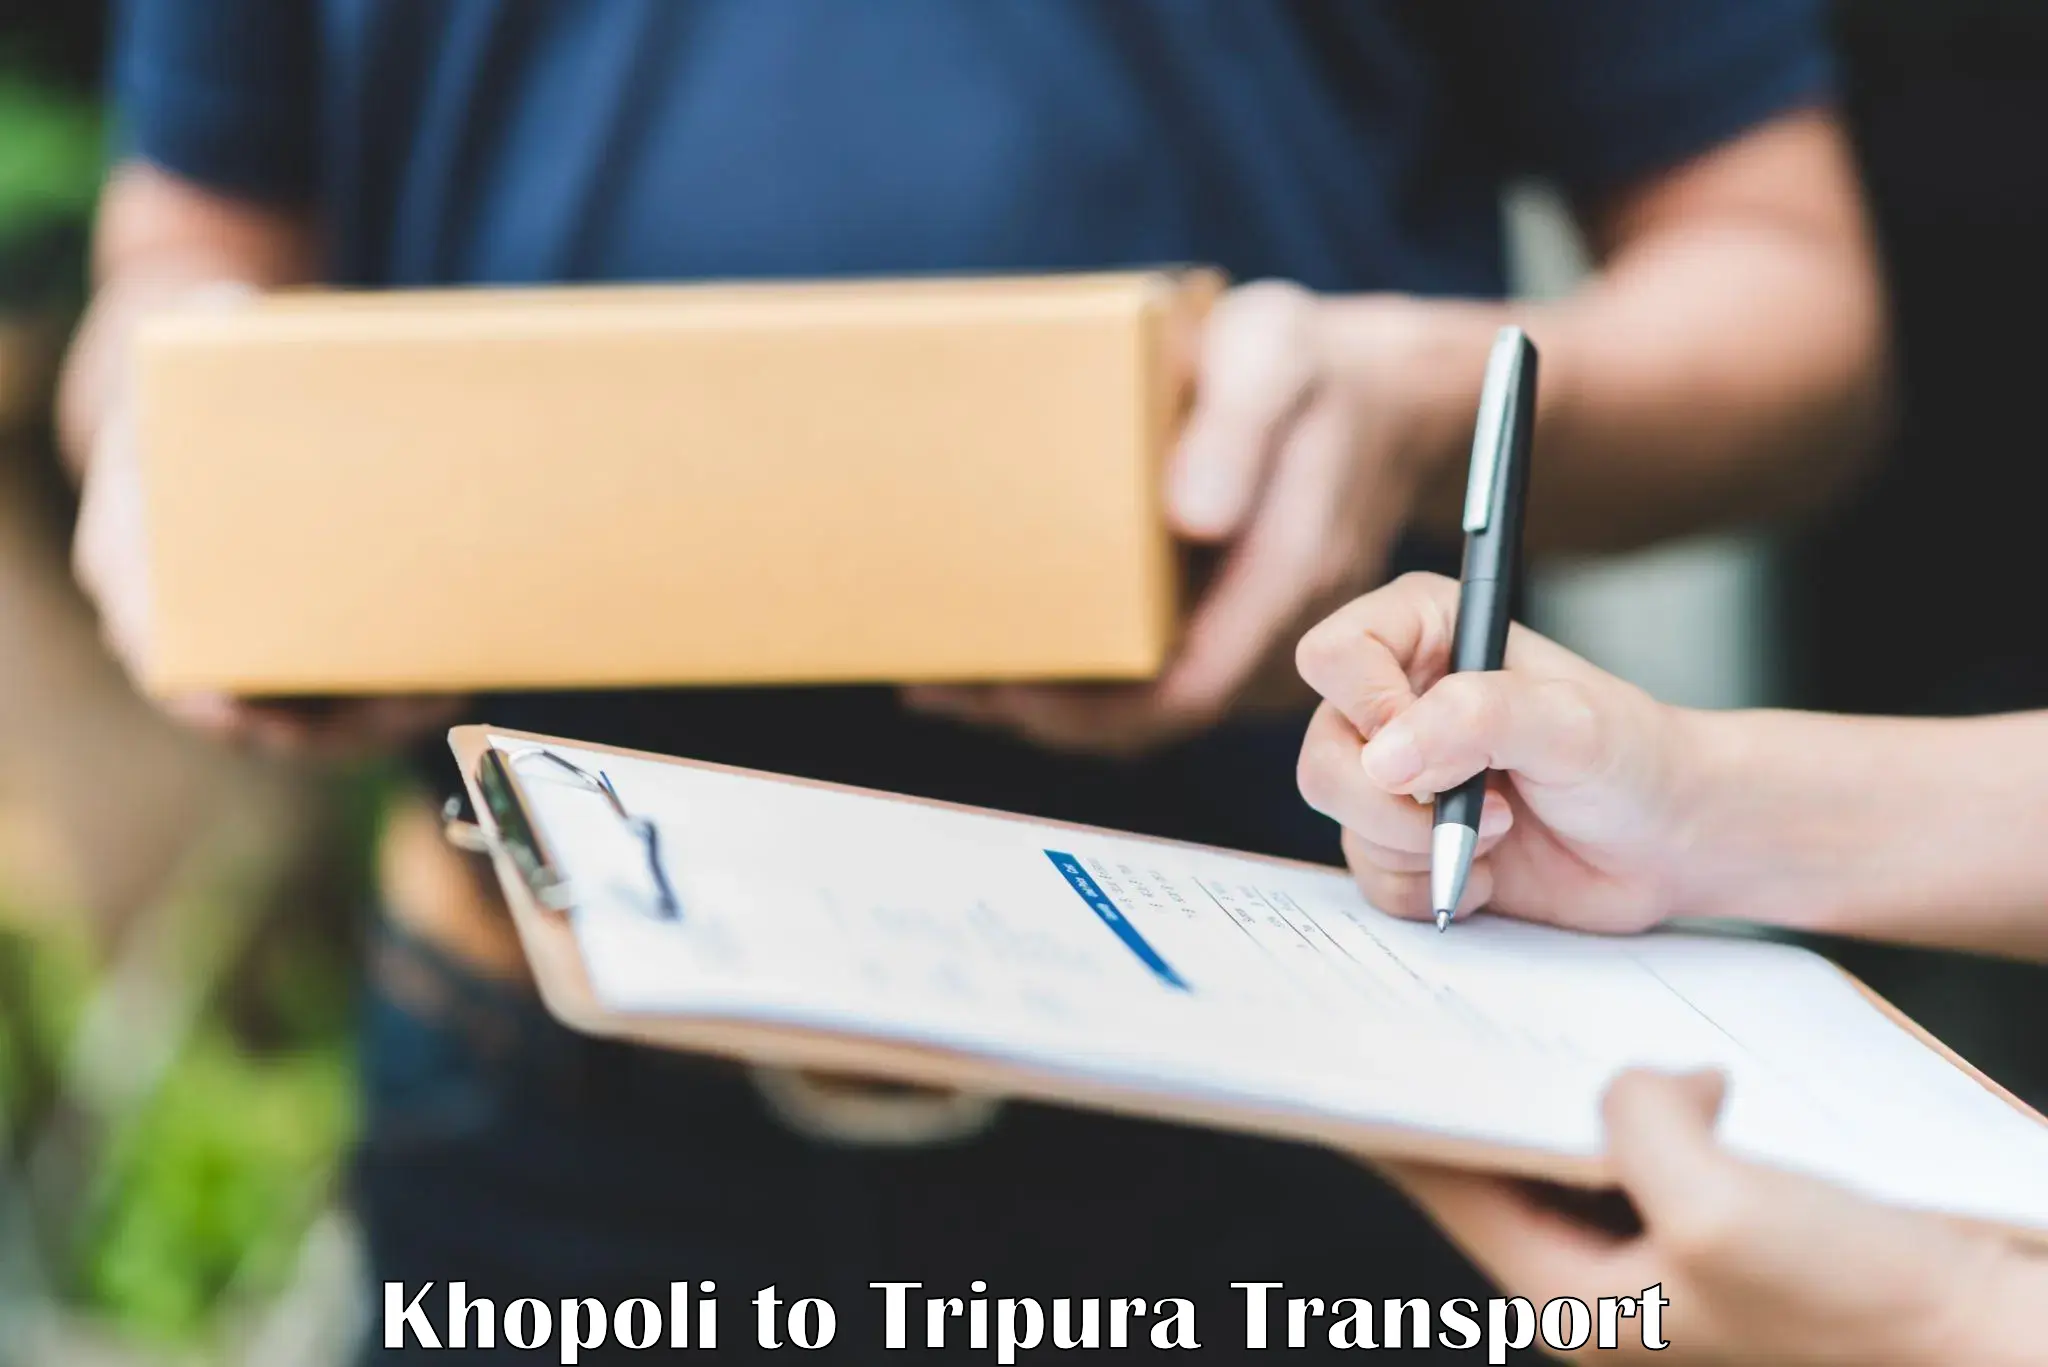 Delivery service Khopoli to Sonamura